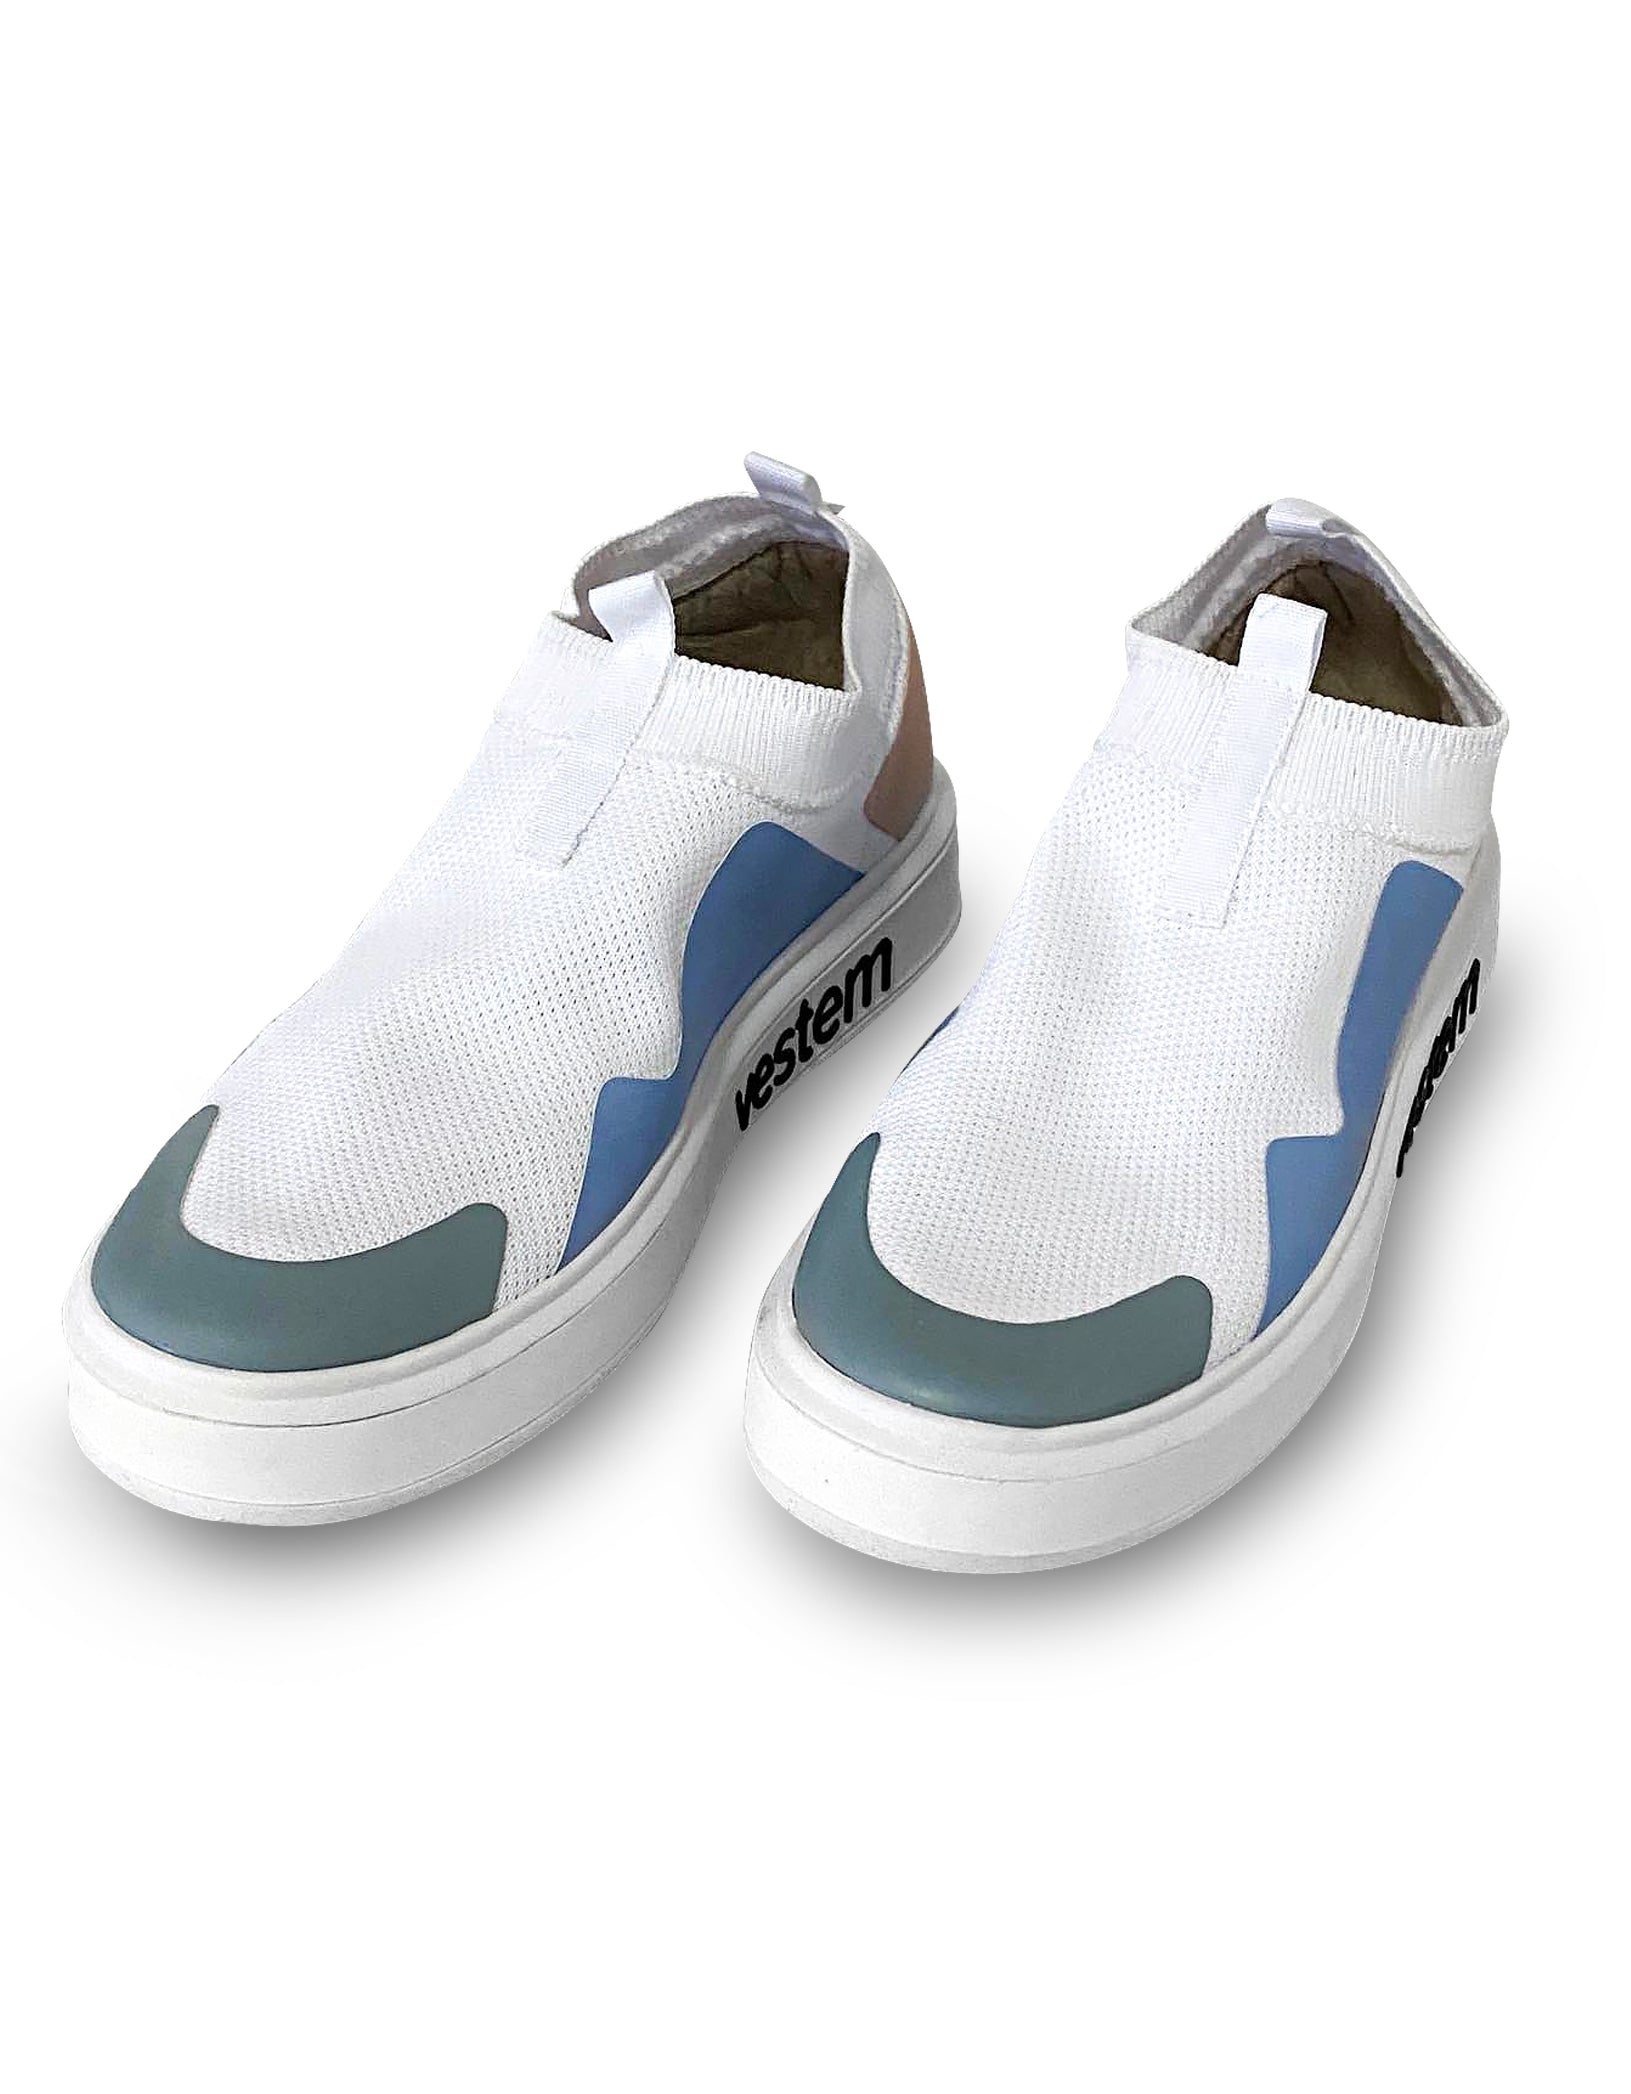 Vestem - White Van Gogh Sneakers - TE21C0001